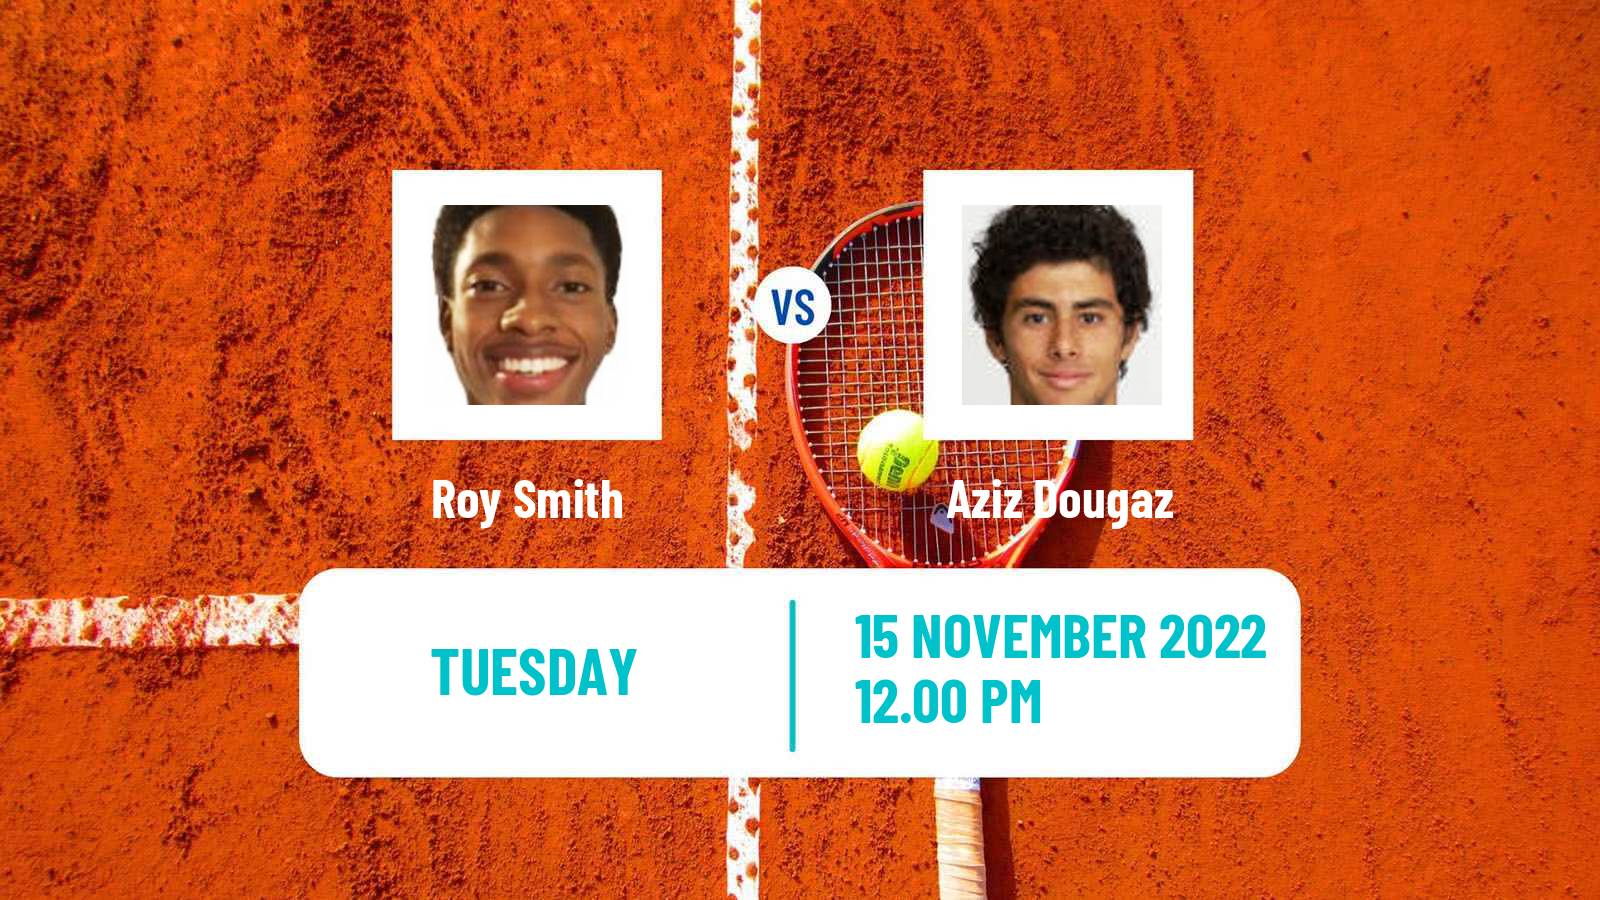 Tennis ATP Challenger Roy Smith - Aziz Dougaz